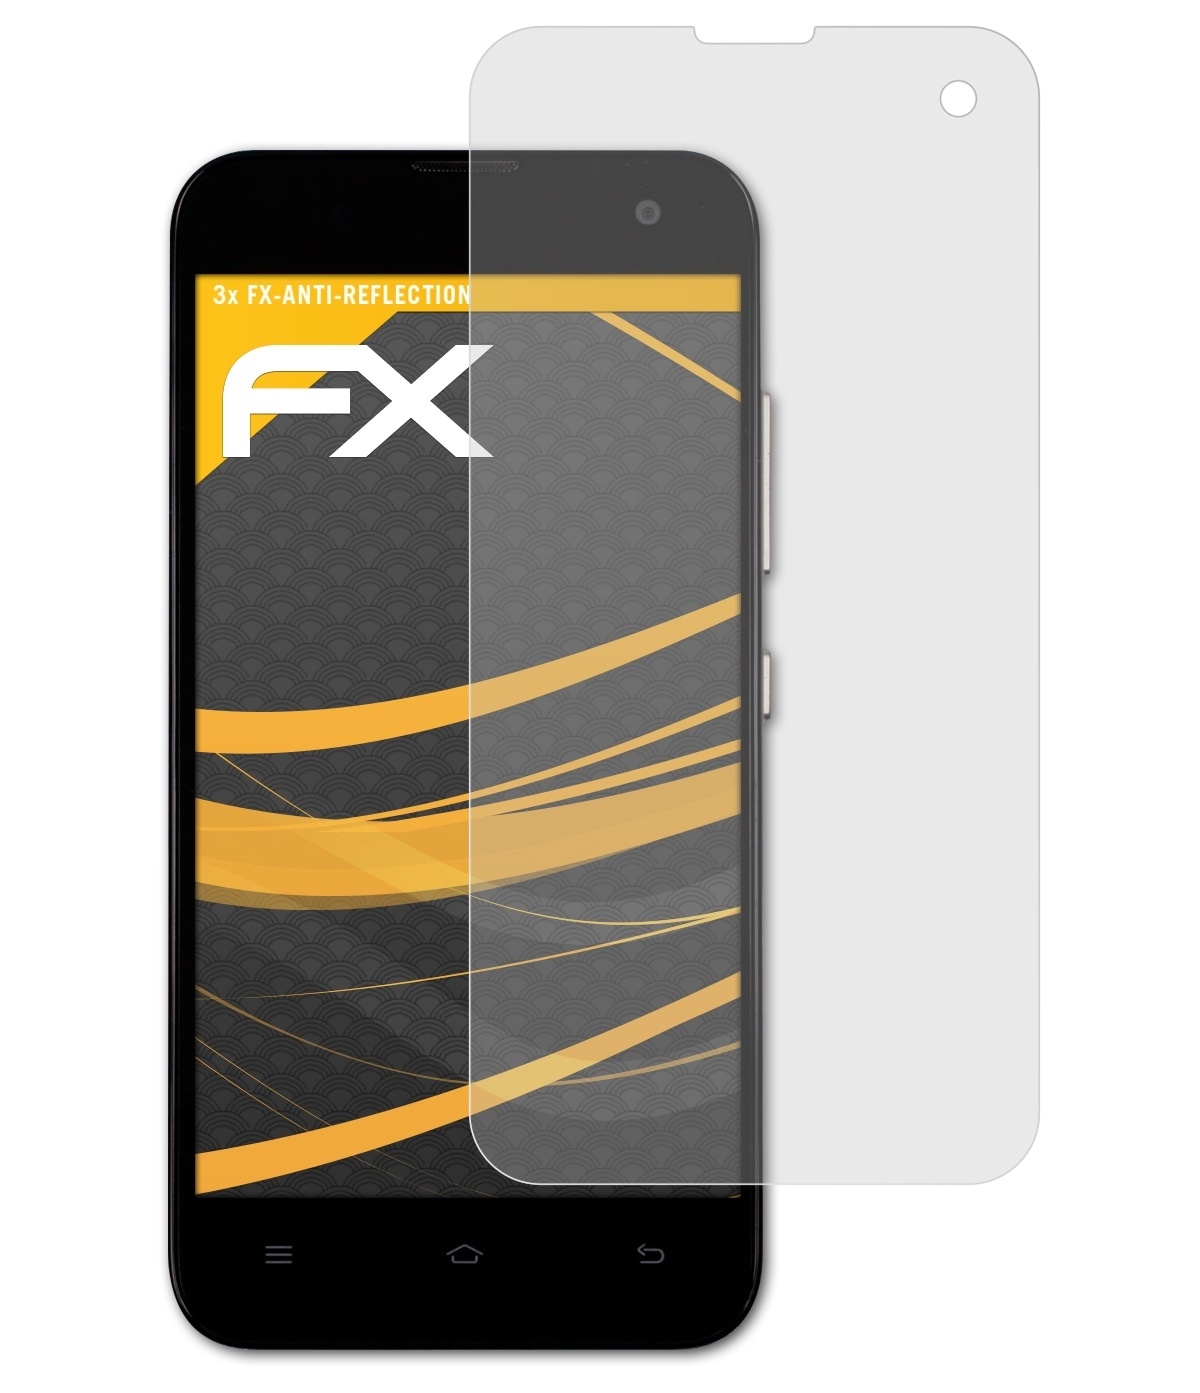 Xiaomi Displayschutz(für (Mi-Two M2A FX-Antireflex 3x A)) ATFOLIX